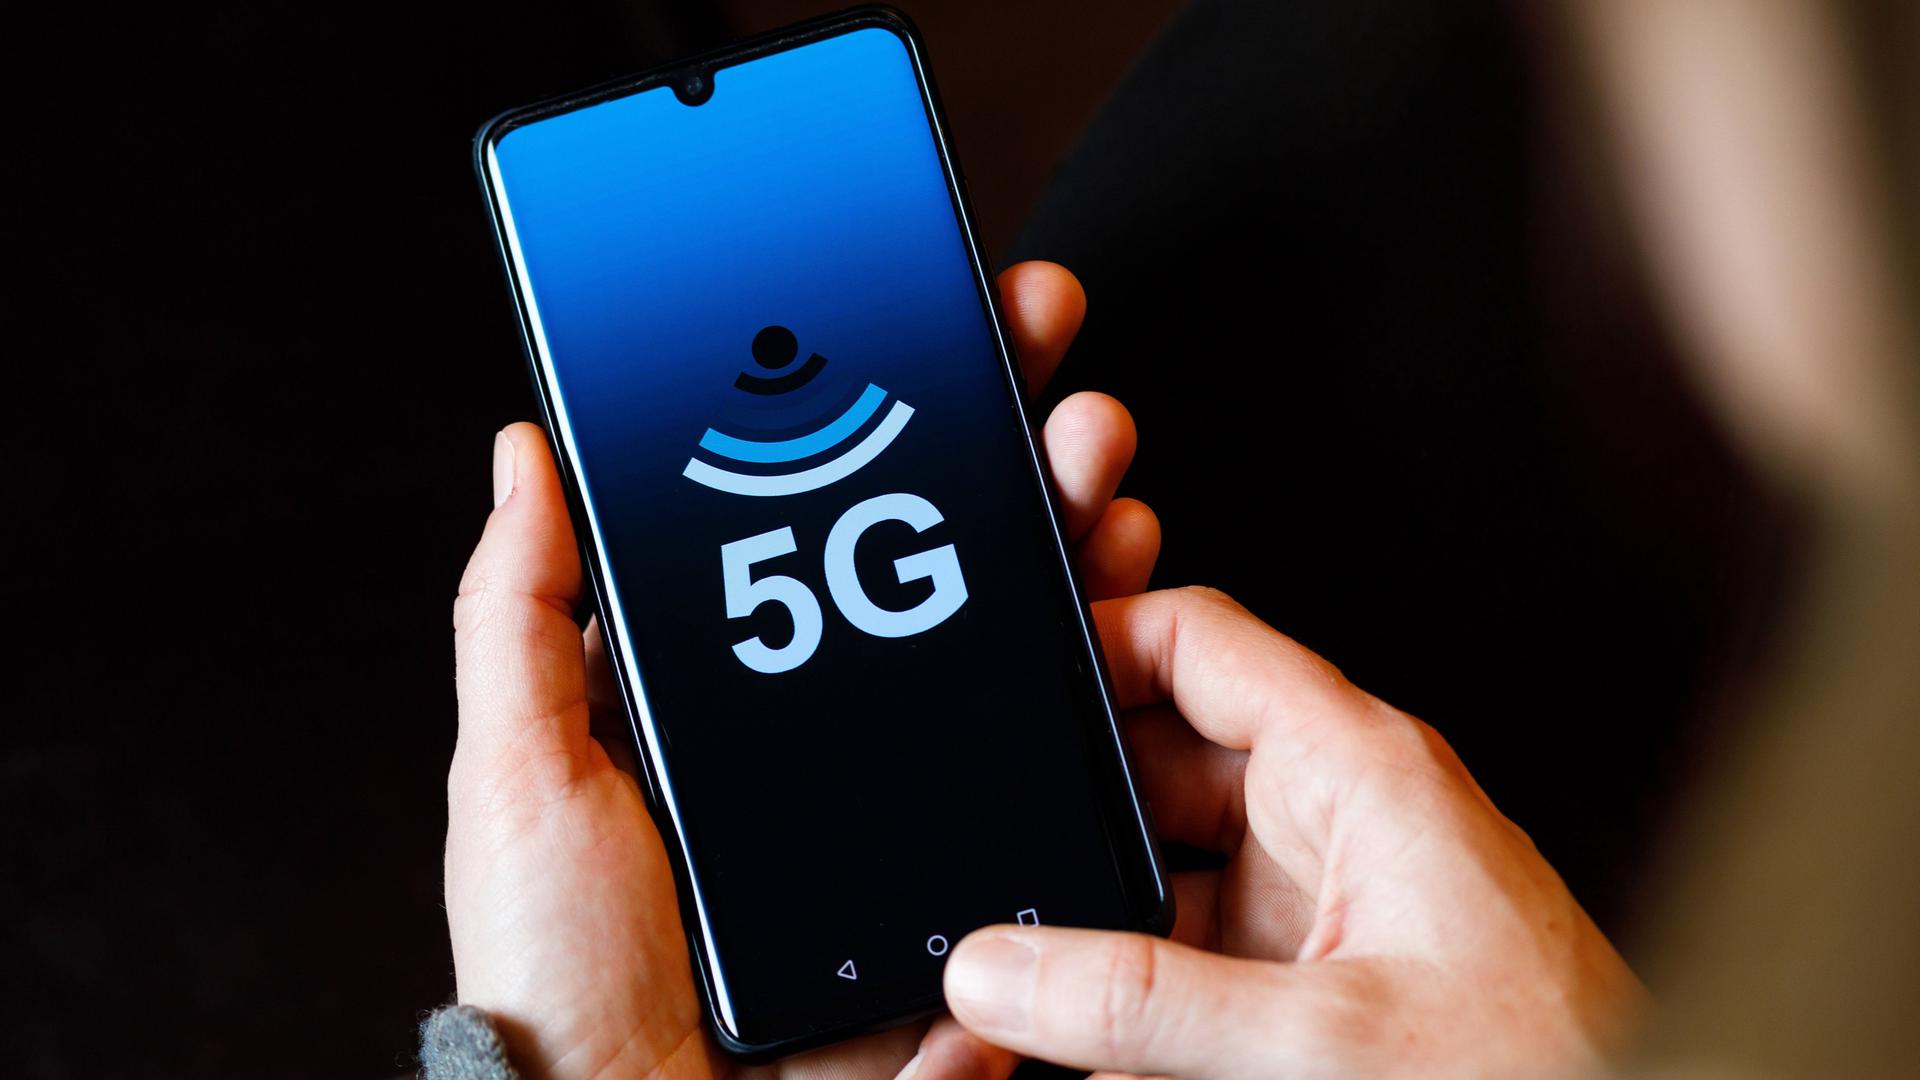 "5G" ist symbolisch auf dem Bildschirm eines Smartphones zu sehen.